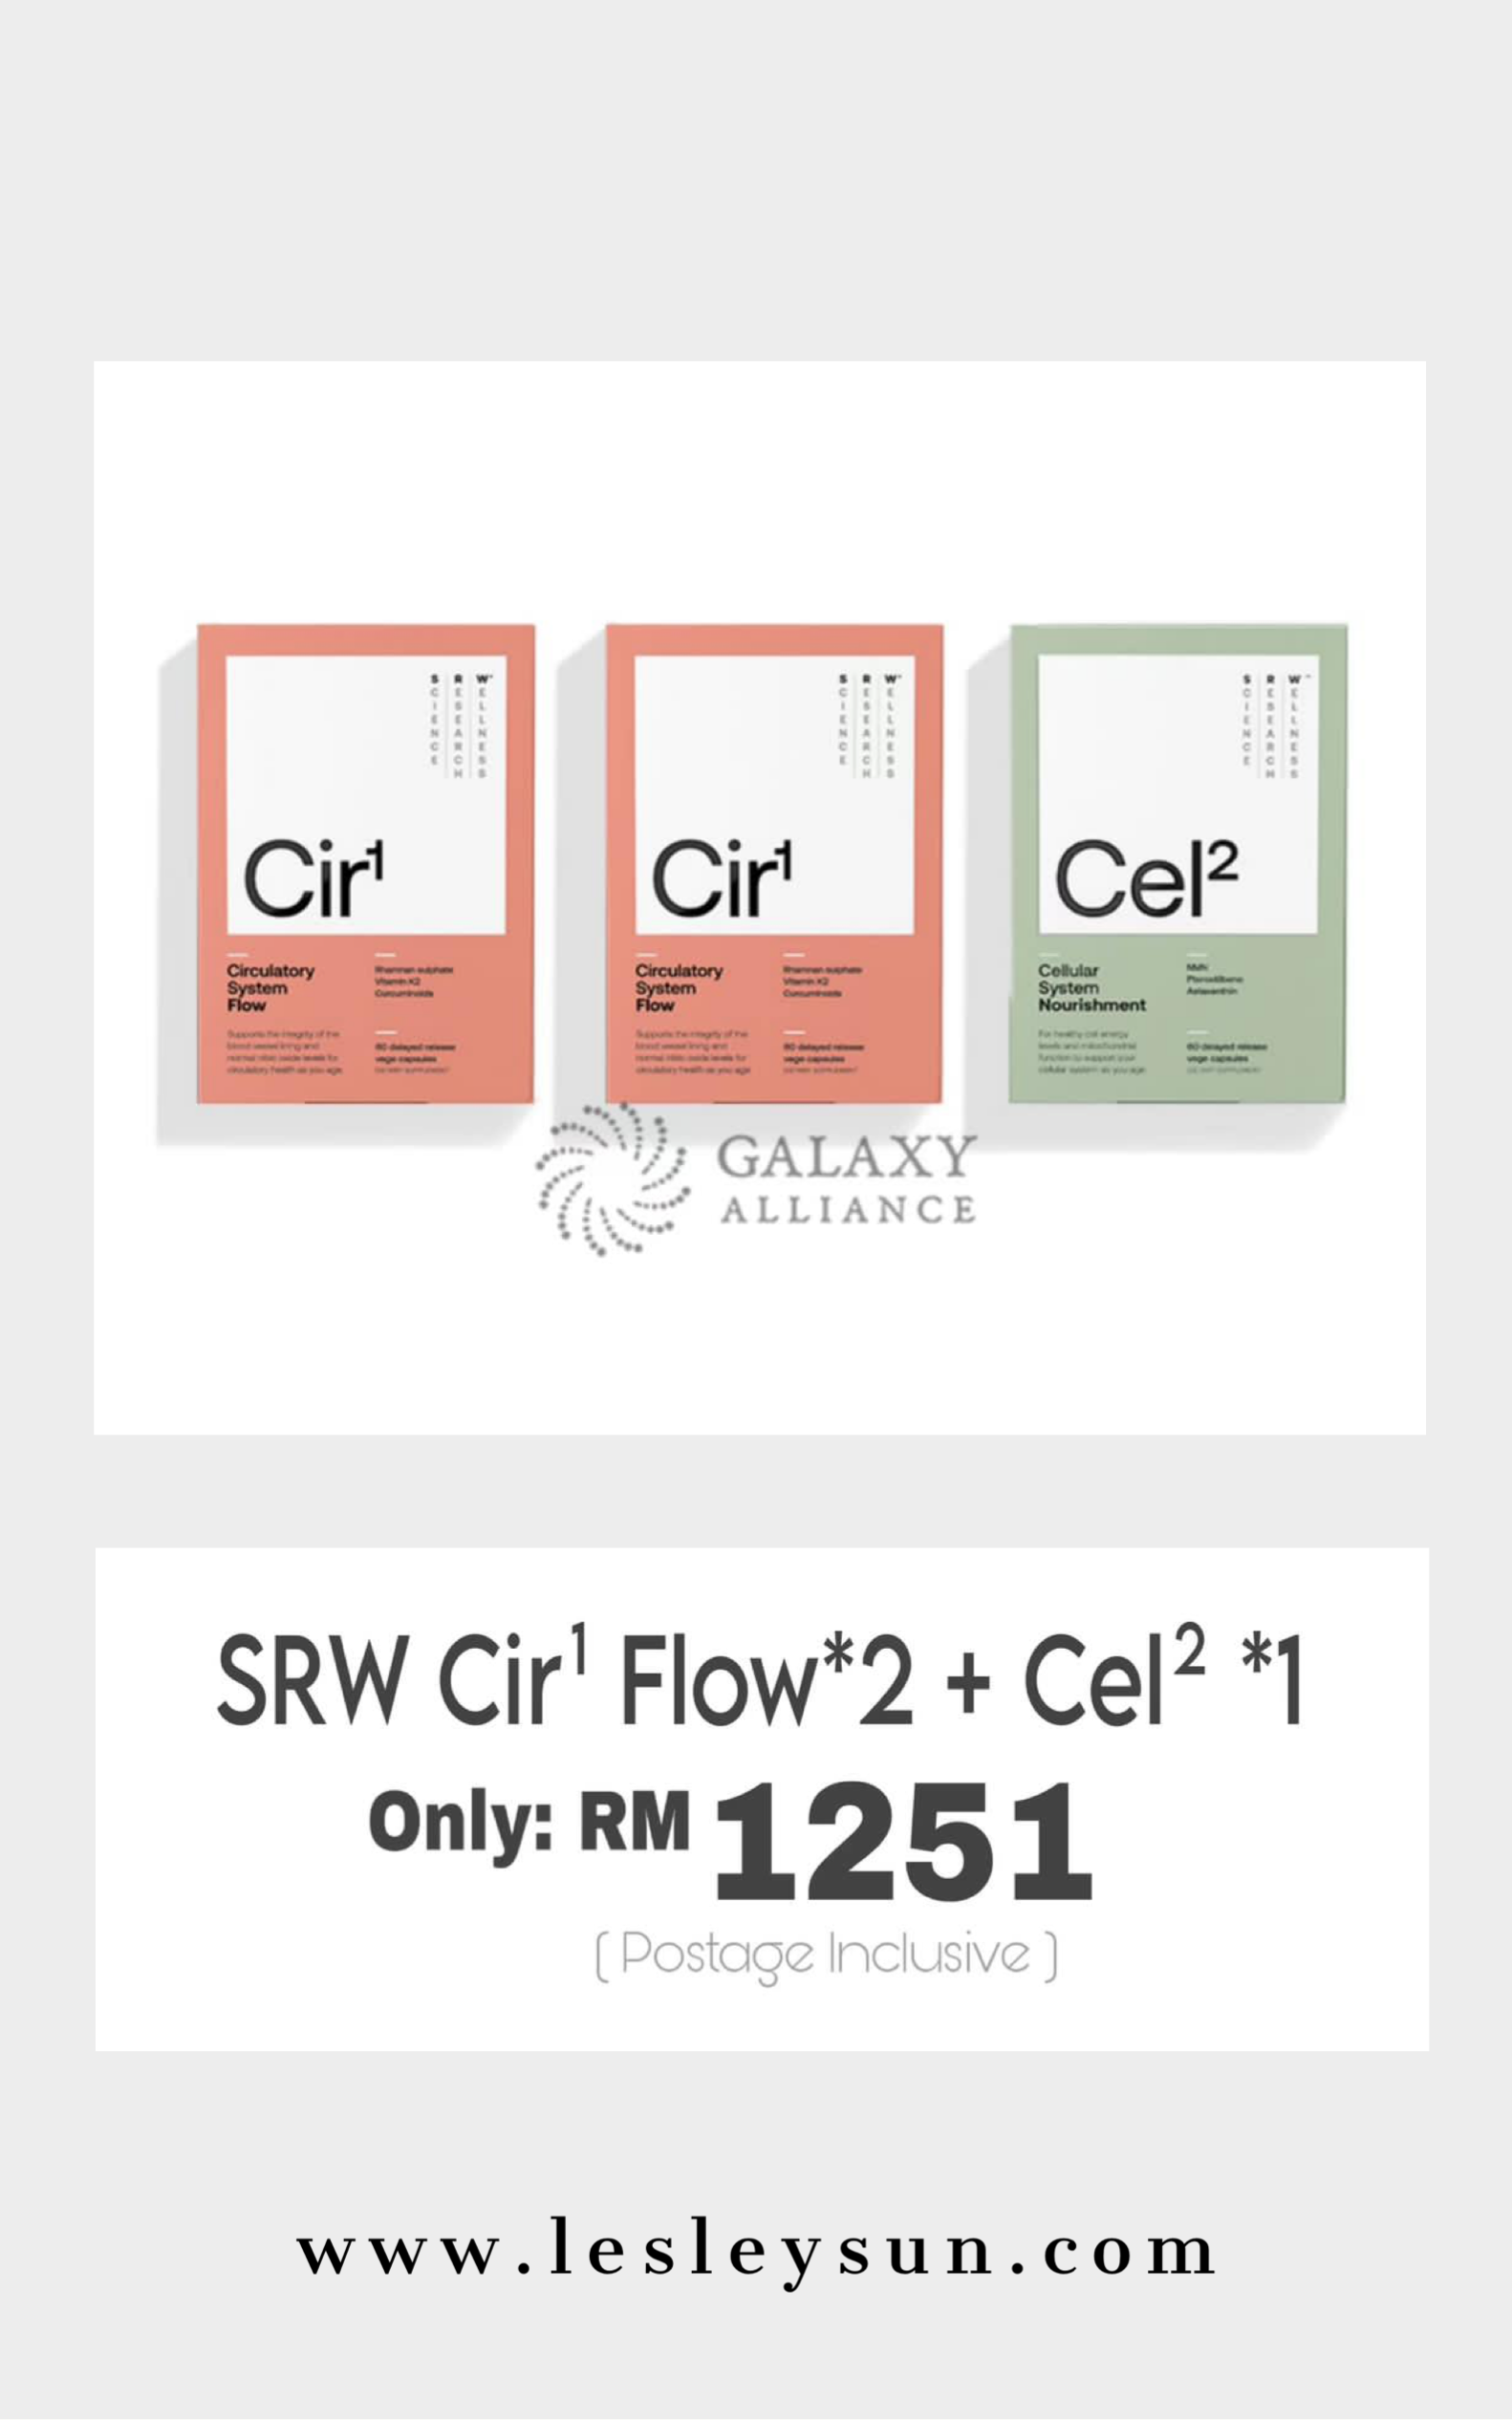 SRW Cir¹ Flow x2 + Cel 2 x1